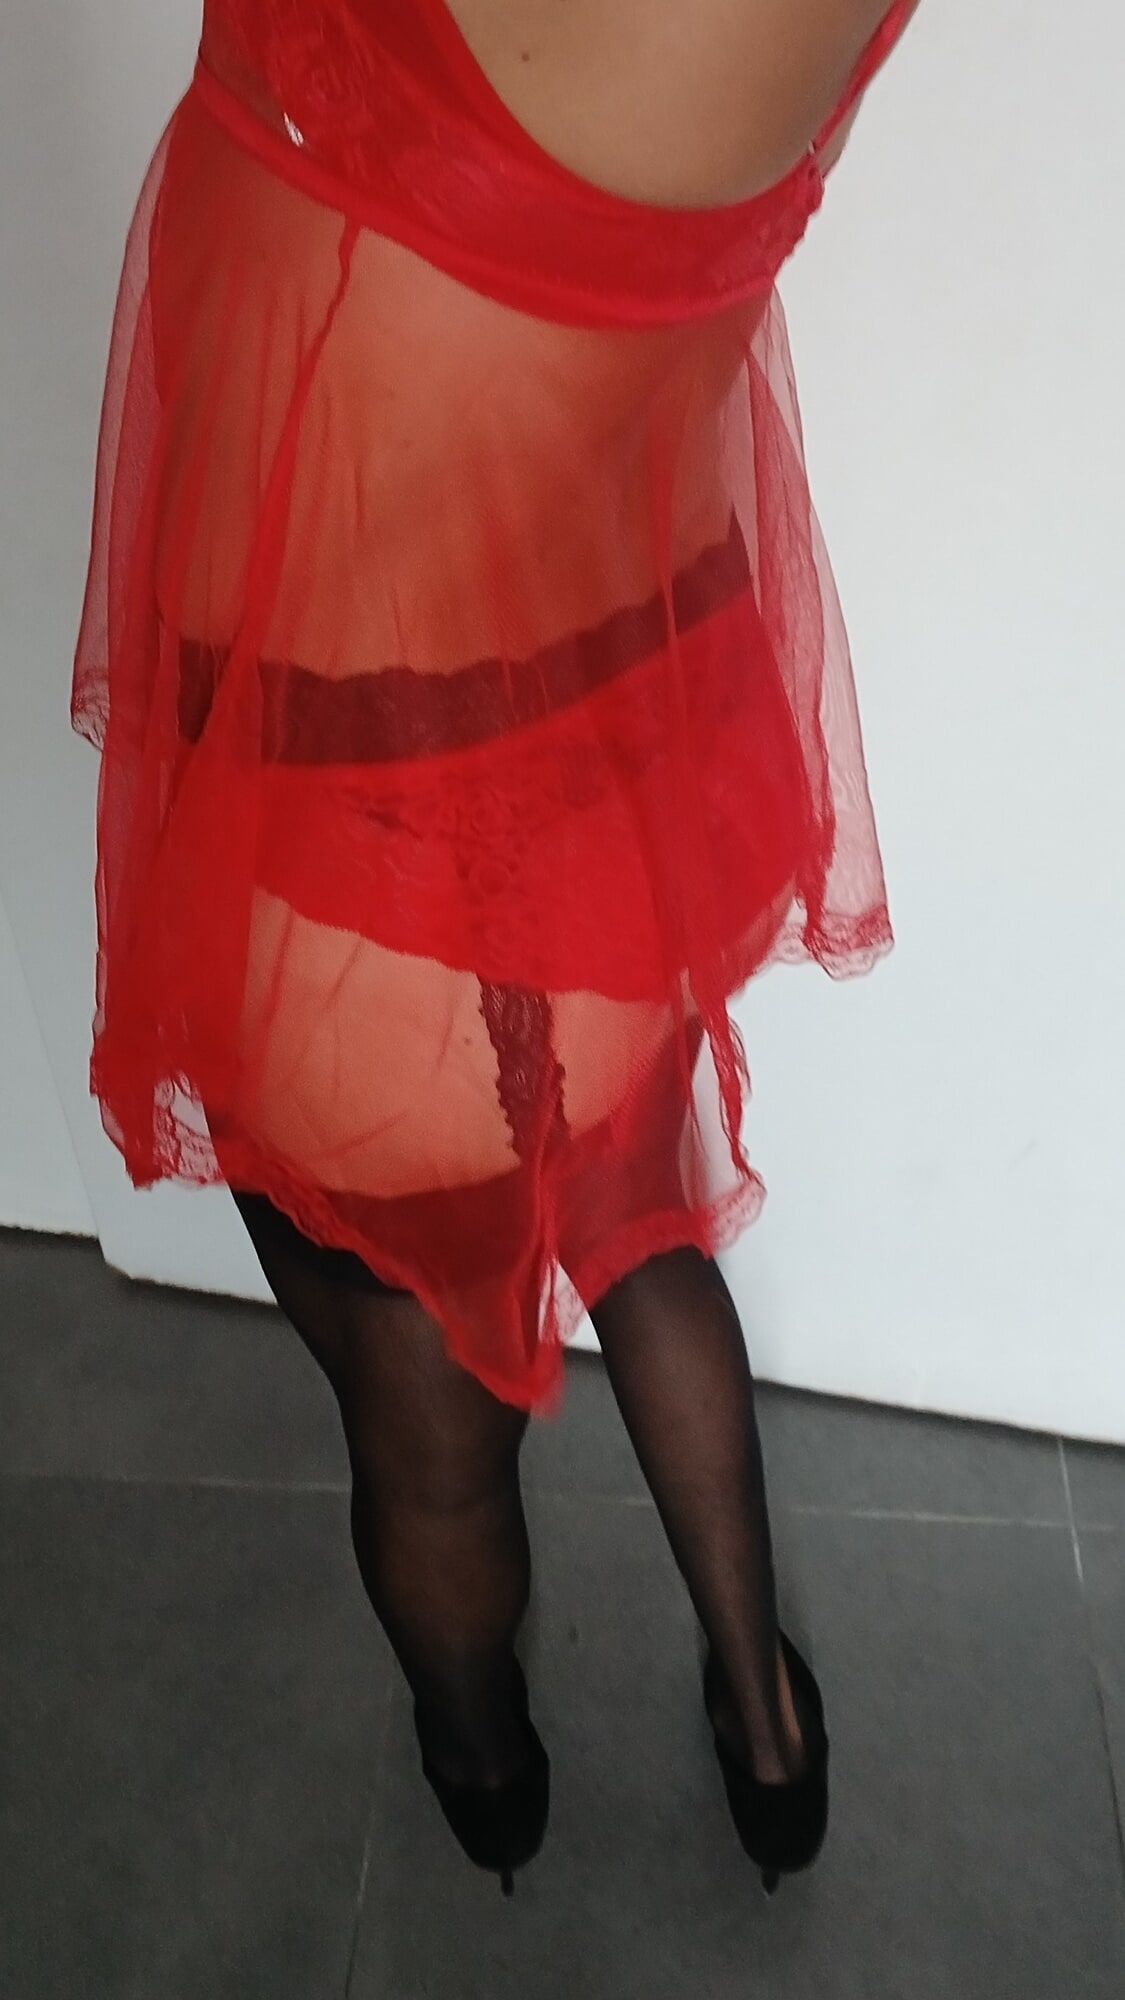 Red nightie black stoking high heels  #9